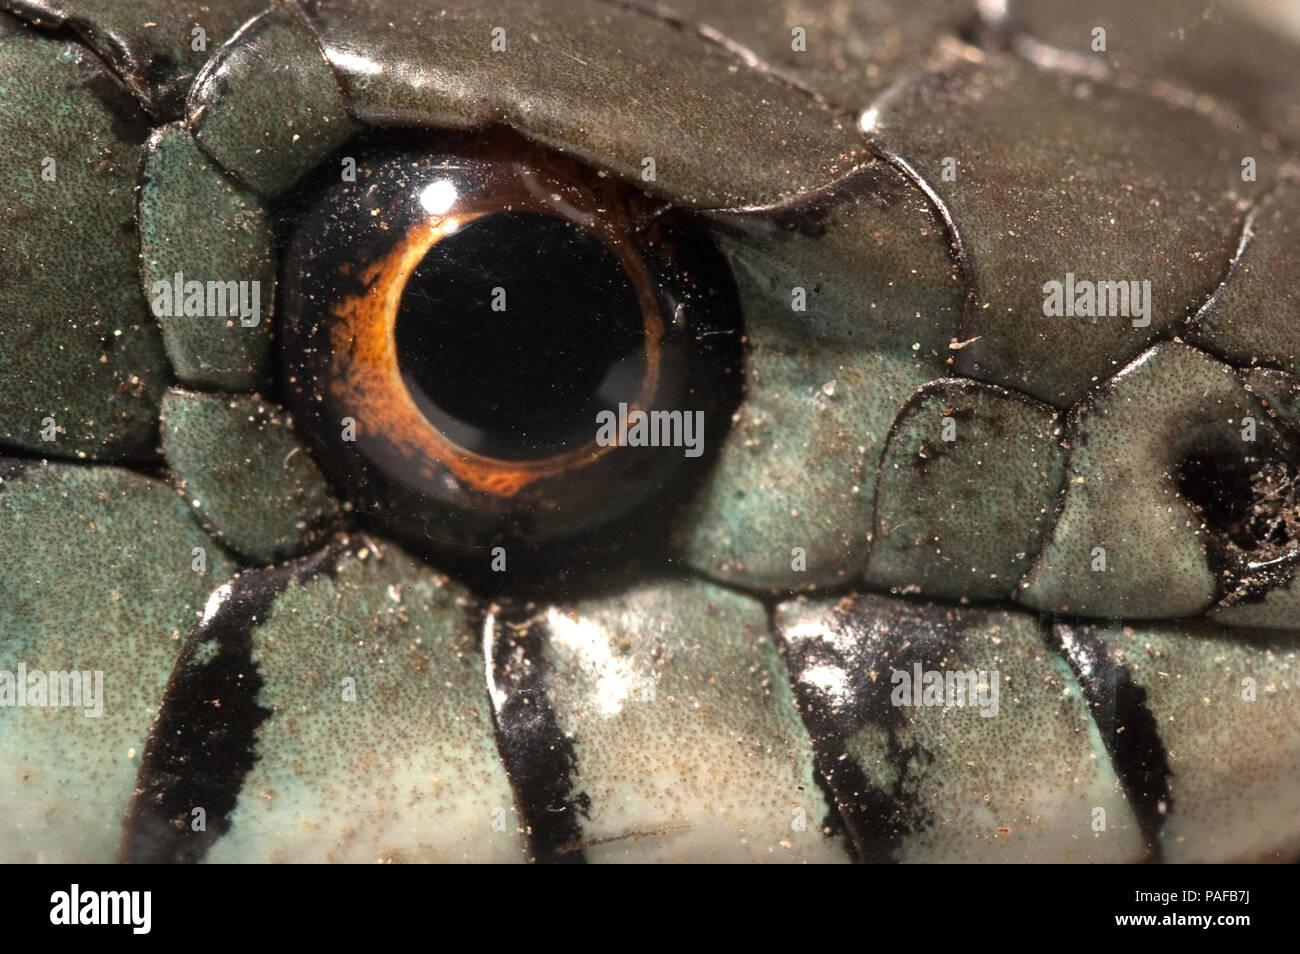 Couleuvre à collier (Natrix natrix), oeil, collier Banque D'Images